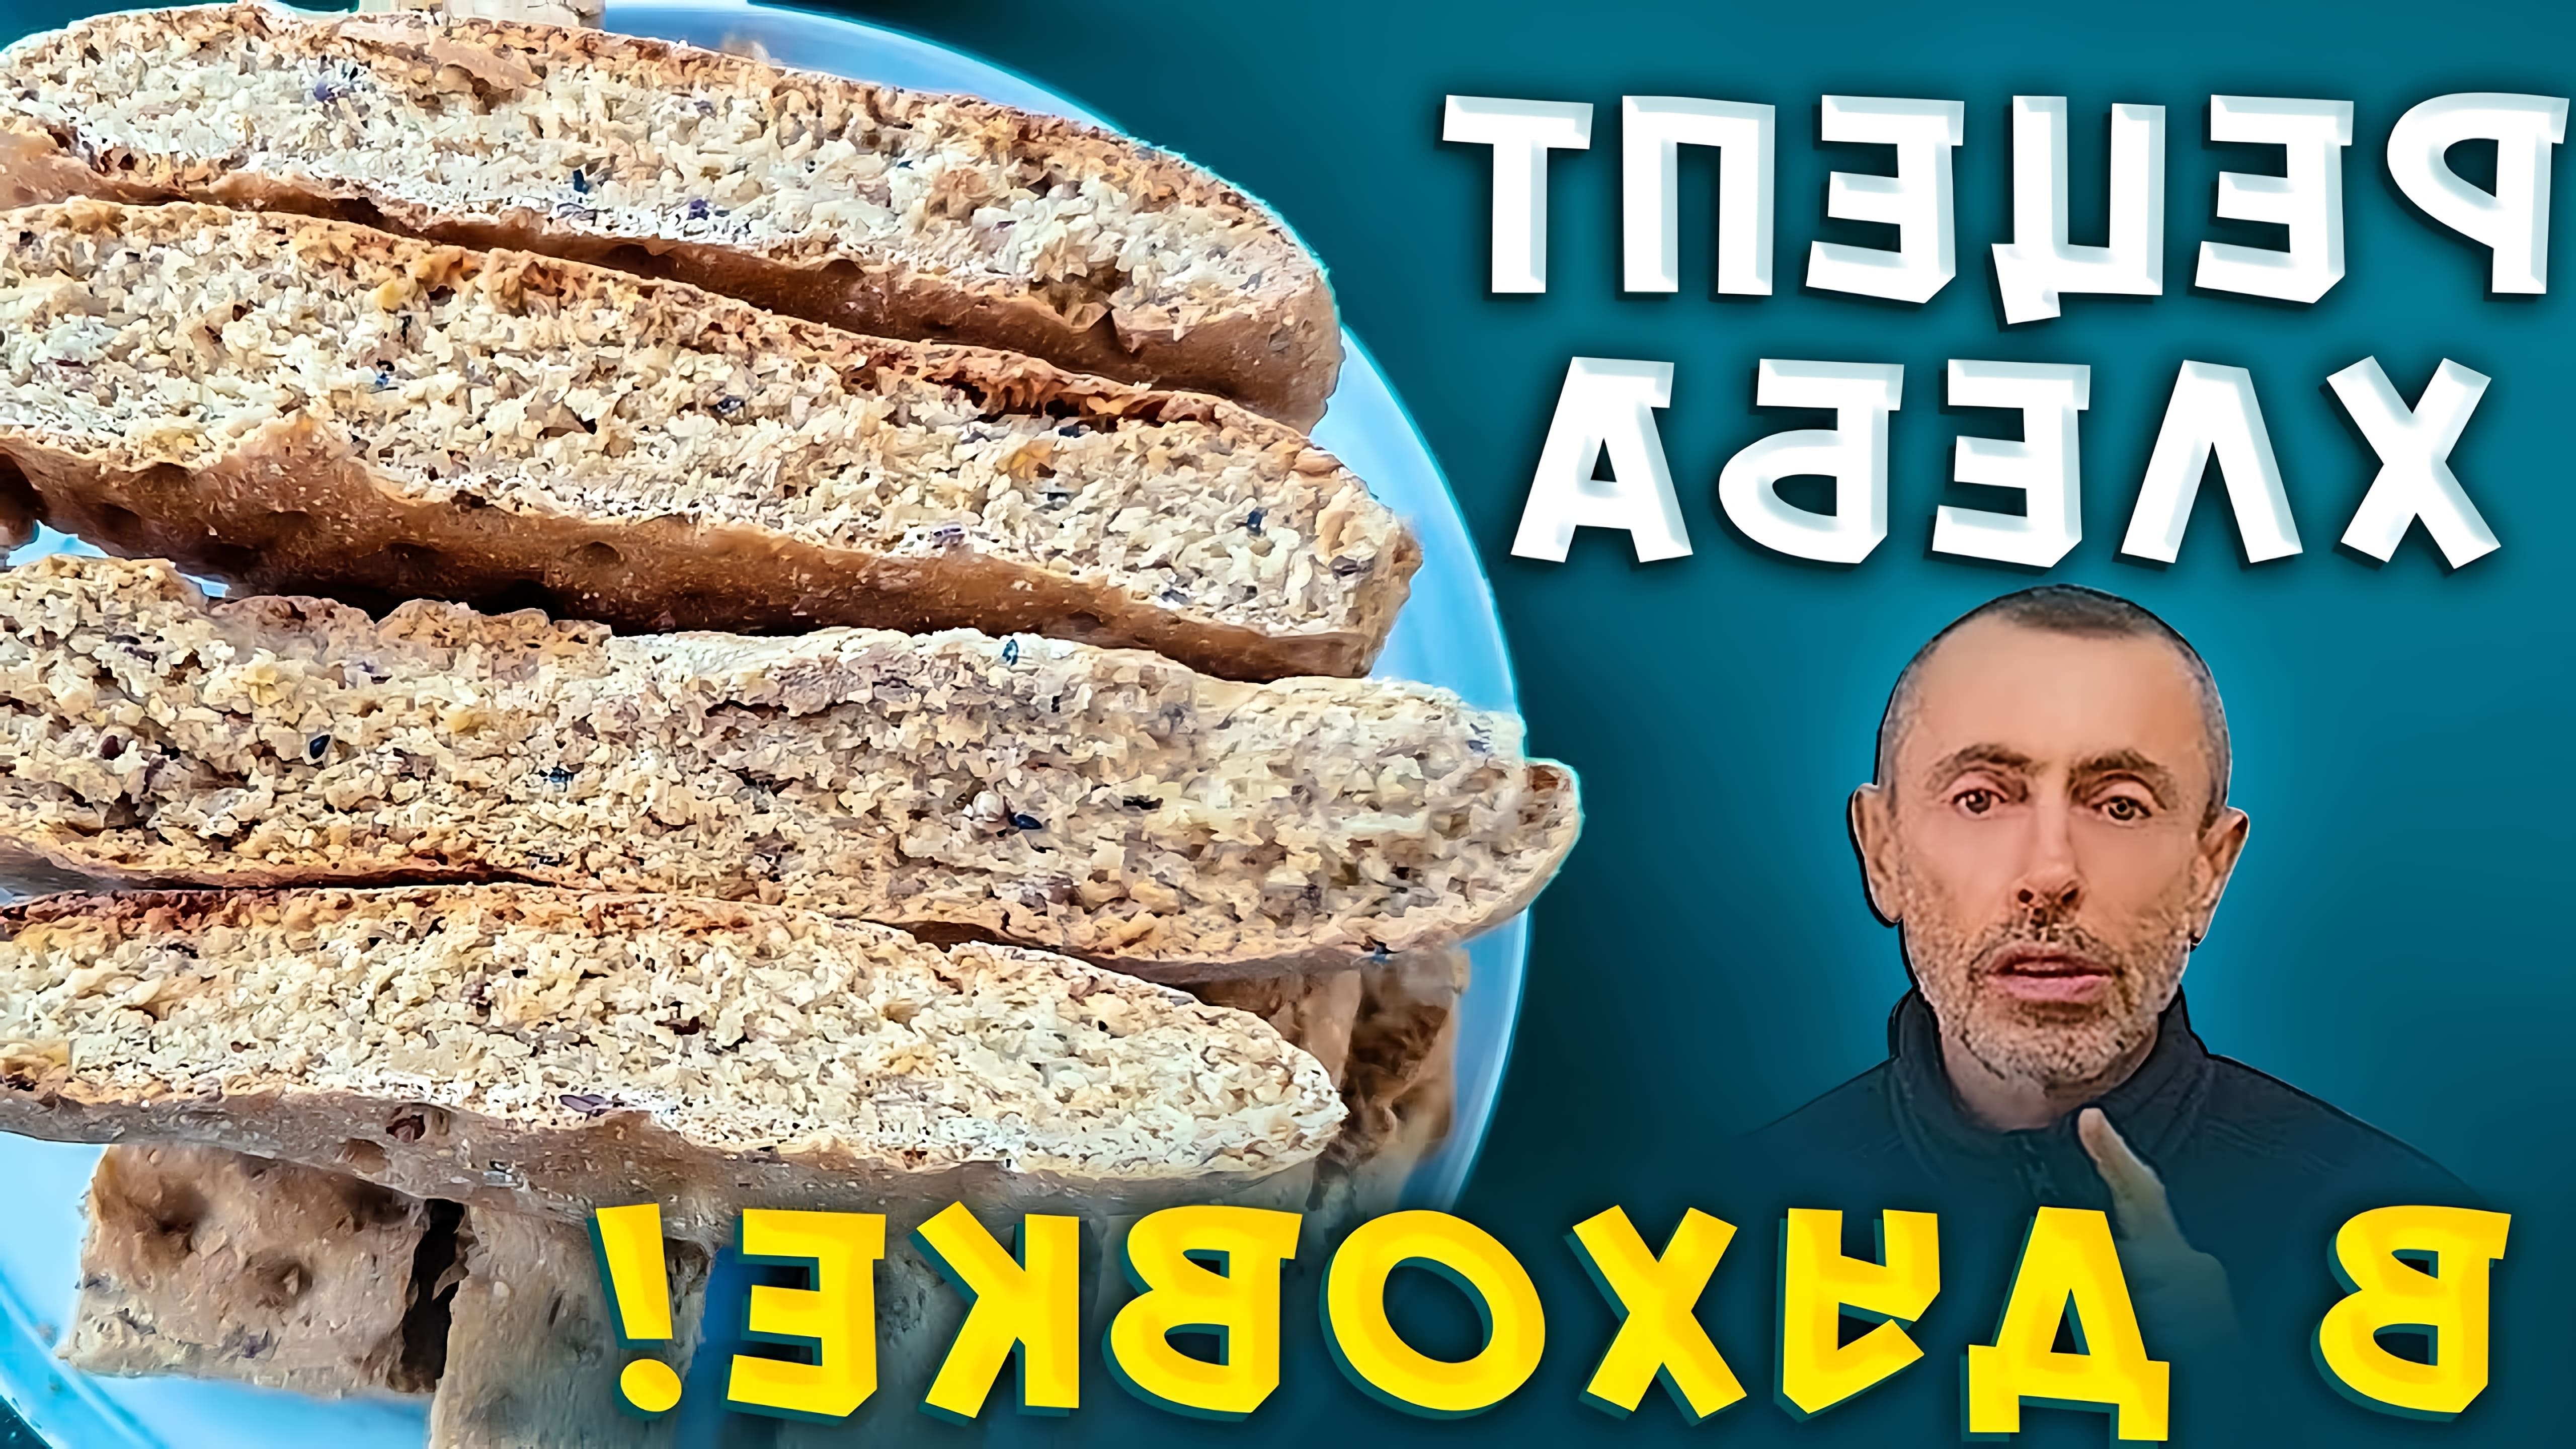 В данном видео демонстрируется рецепт приготовления домашнего цельнозернового хлеба